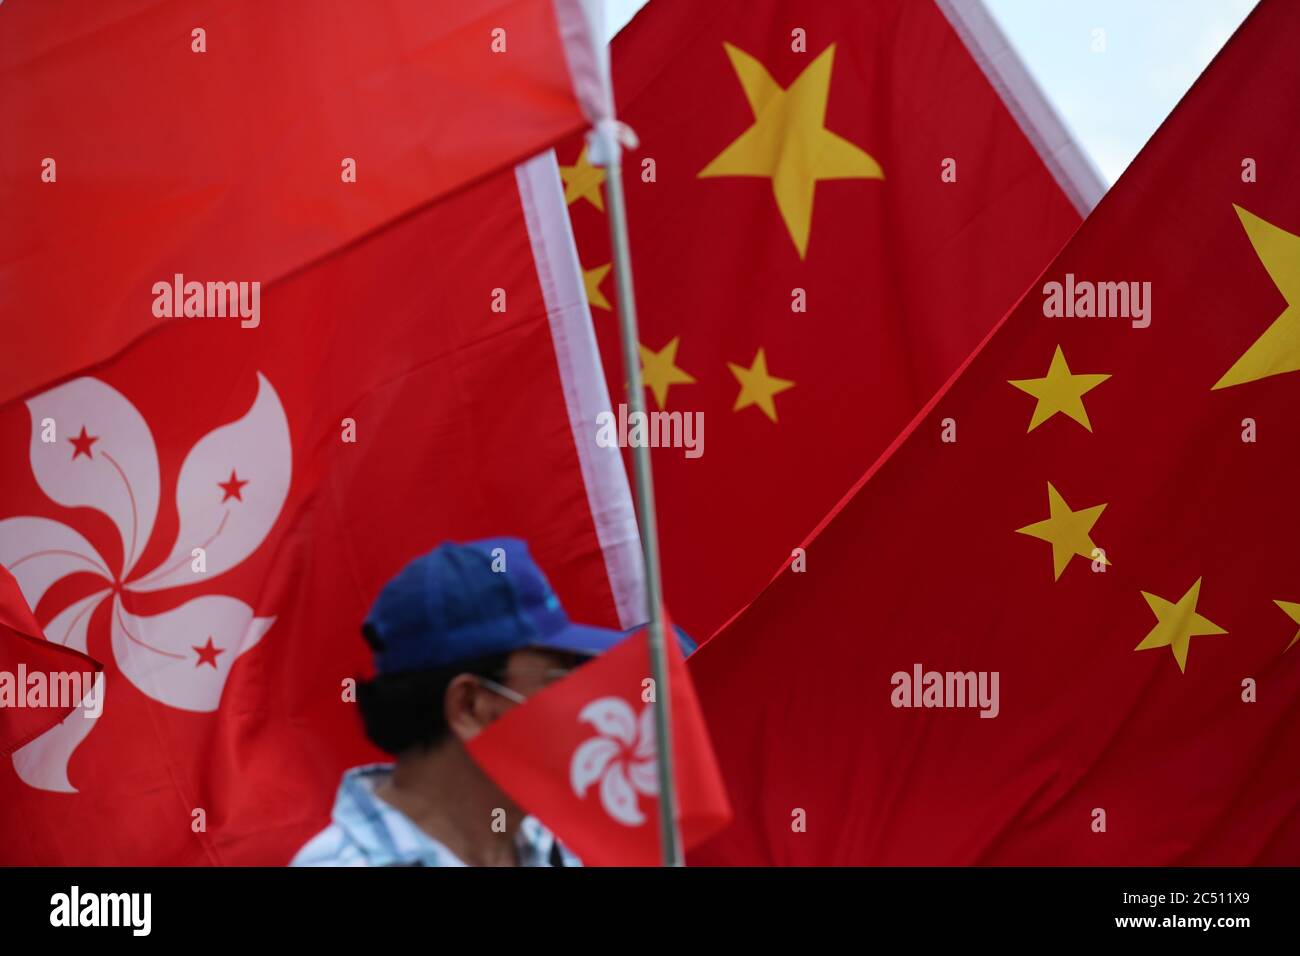 Hong Kong, Chine. 30 juin 2020. Les partisans de Pékin brandir les drapeaux chinois et chantent l'hymne national lors d'un rassemblement pour célébrer l'adoption d'une loi sur la sécurité nationale le 30 juin 2020 à Hong Kong, en Chine. Beijing a adopté la loi controversée sur la sécurité nationale qui menacera les villes autonomie et libertés politiques crédit: May James/ZUMA Wire/Alamy Live News Banque D'Images